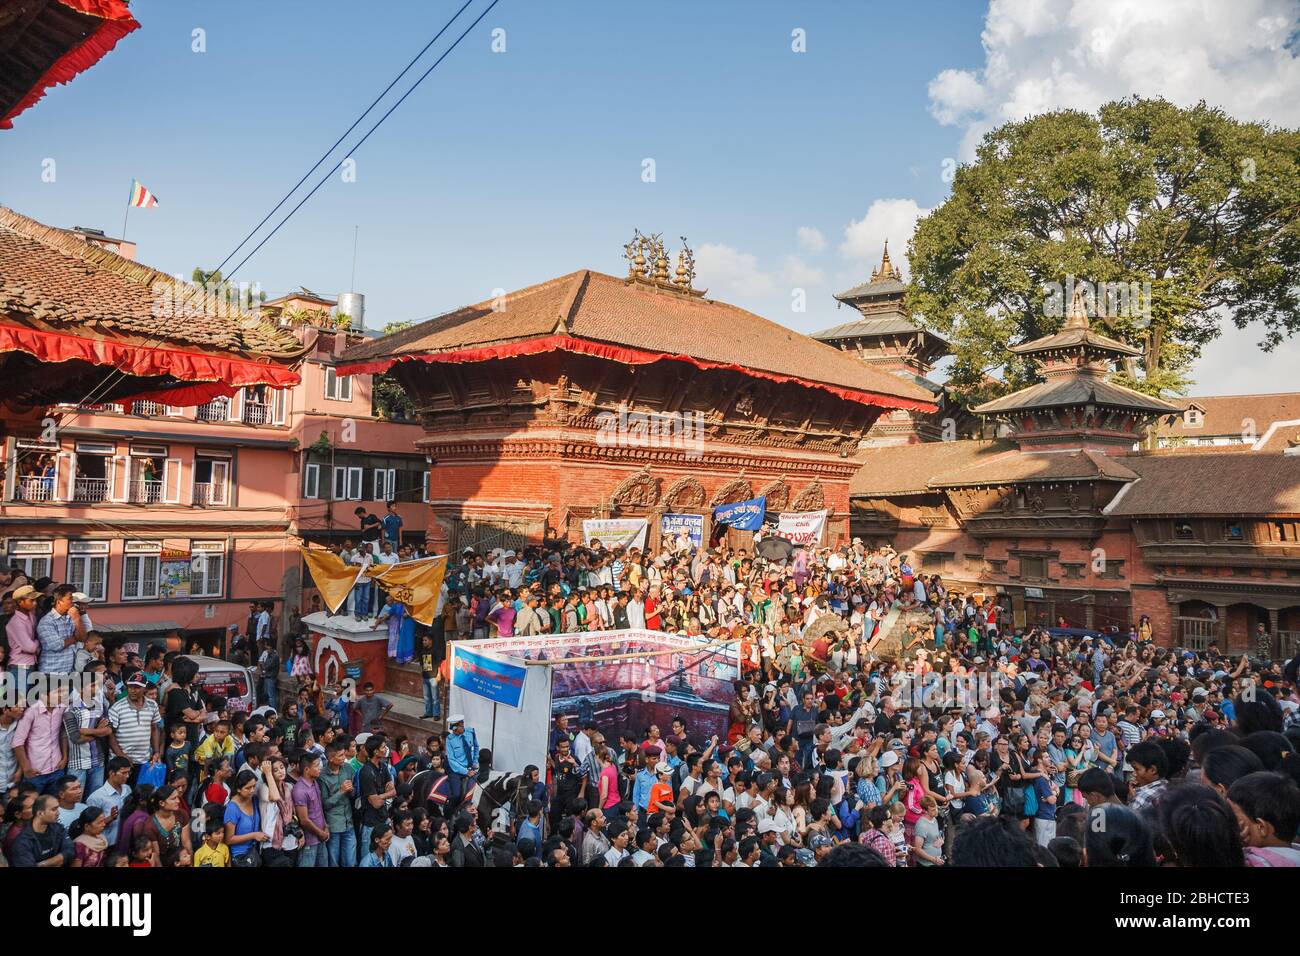 KATHMANDU, NEPAL - 29. SEPTEMBER 2012: Menschenmenge versammelt sich auf dem Durbar Square, um die Feier des Indra Jatra Festivals in Kathmandu, Nepa, zu sehen Stockfoto